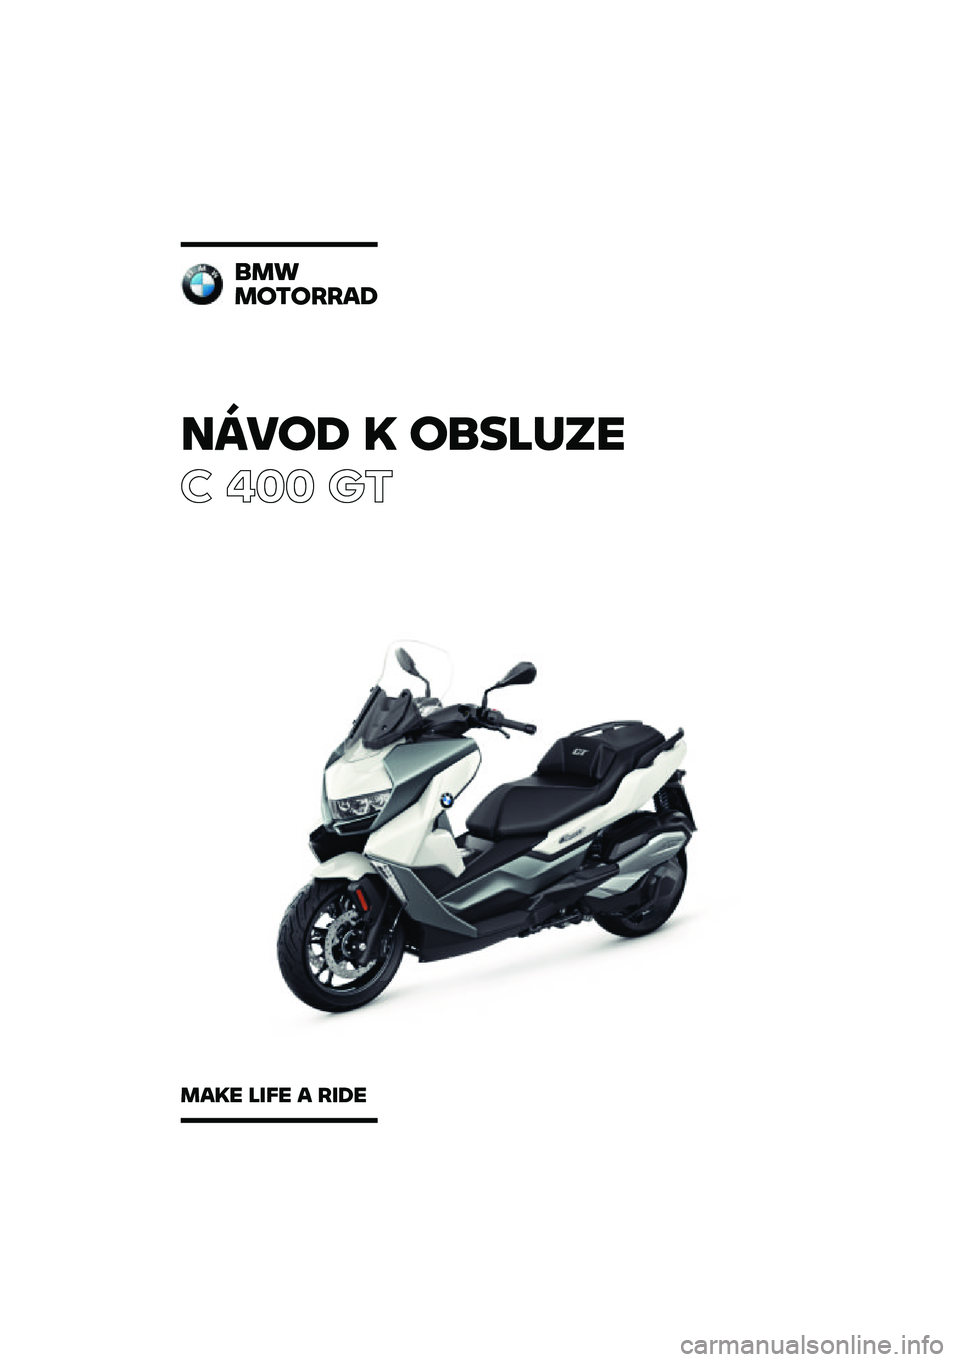 BMW MOTORRAD C 400 GT 2020  Návod k obsluze (in Czech) �����\b �	 ��
��\f�
��
� ��� ��\b
�
��
��������\b
���	� �\f��� � ���\b� 